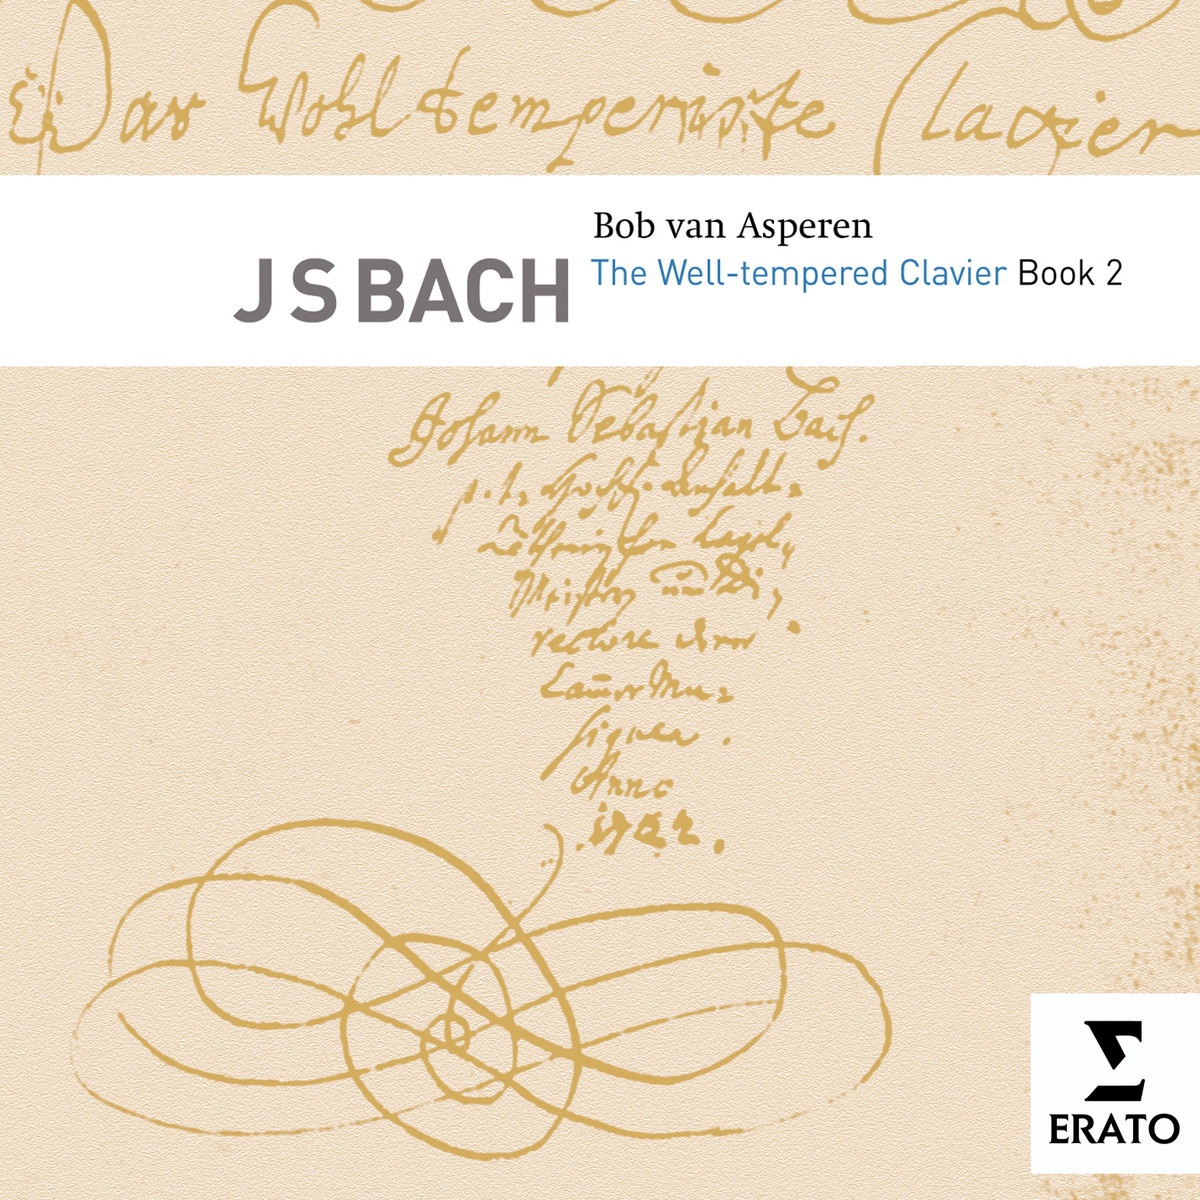 Das wohltemperierte Klavier Book Two BWV 870-893, Book Two, No. 10 in E minor BWV 879: Fugue